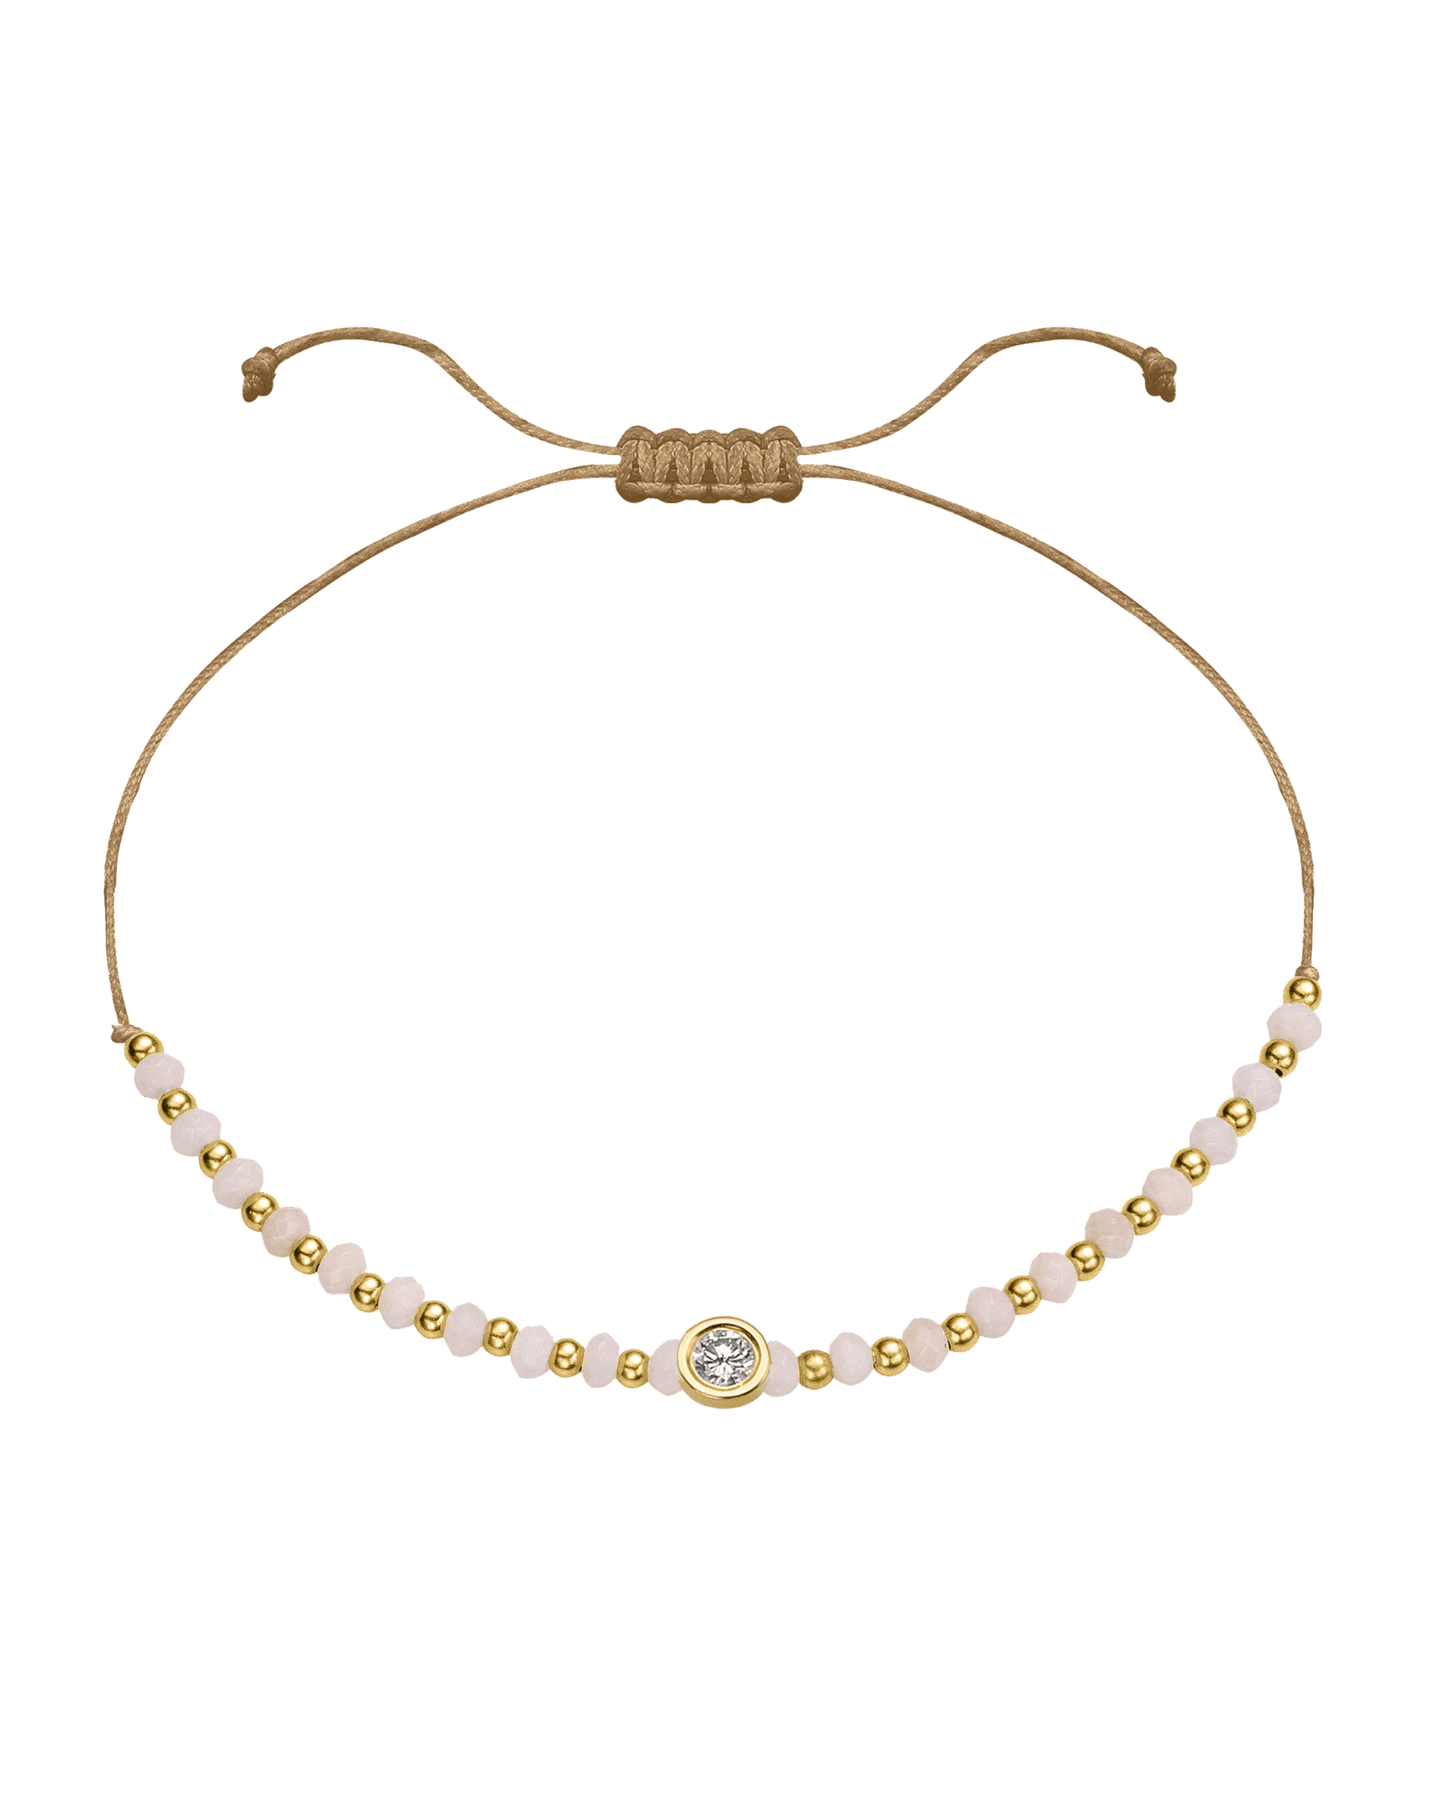 Rhodochrosite Gemstone String of Love Bracelet for Compassion - 14K Yellow Gold Bracelet 14K Solid Gold Camel Large: 0.1ct 